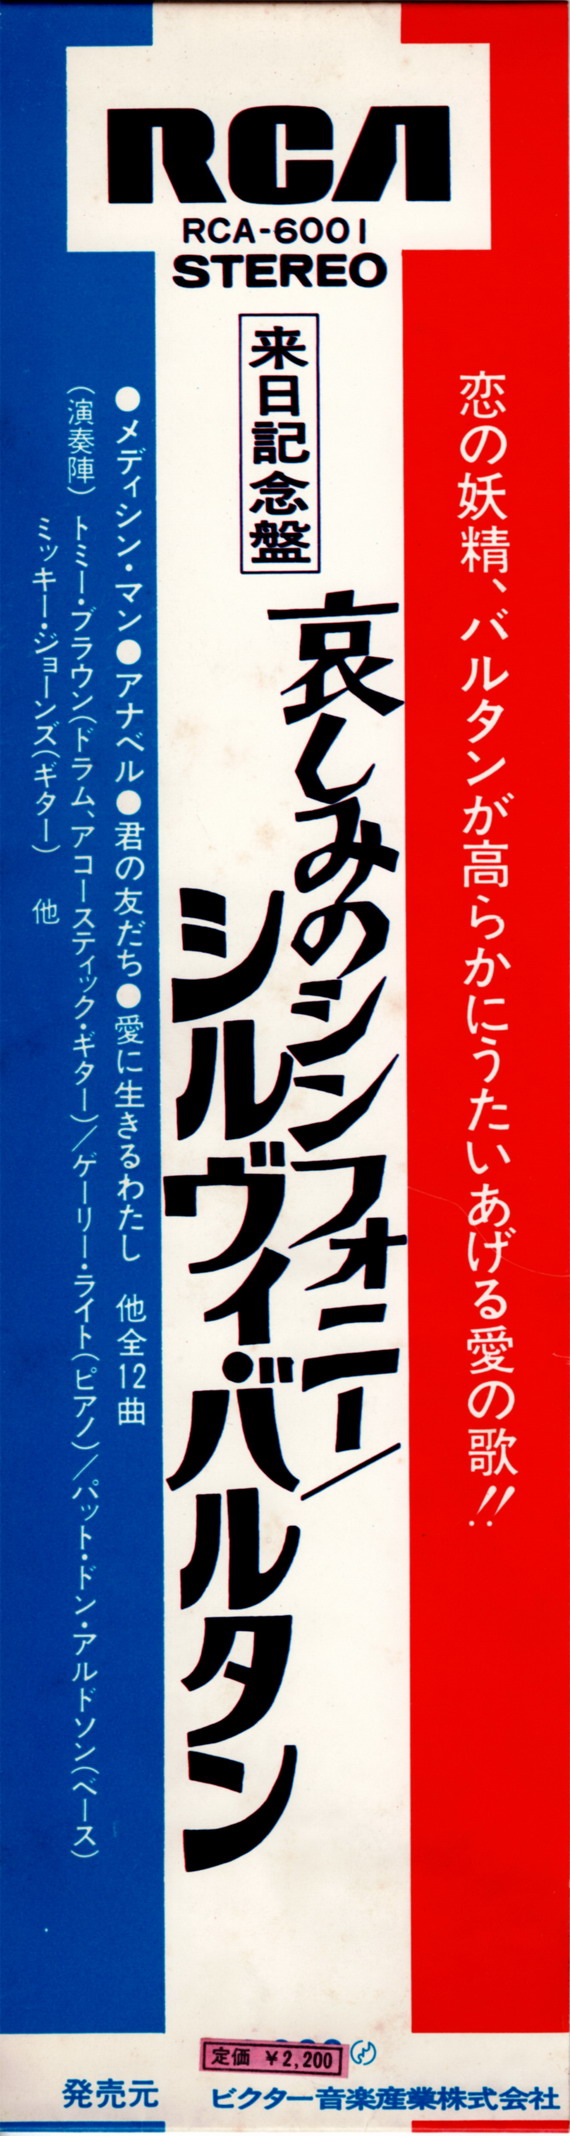 Discographie Japonaise - 3ème partie -  (33 T ORIGINAUX)  - Page 33 Jpn_2936